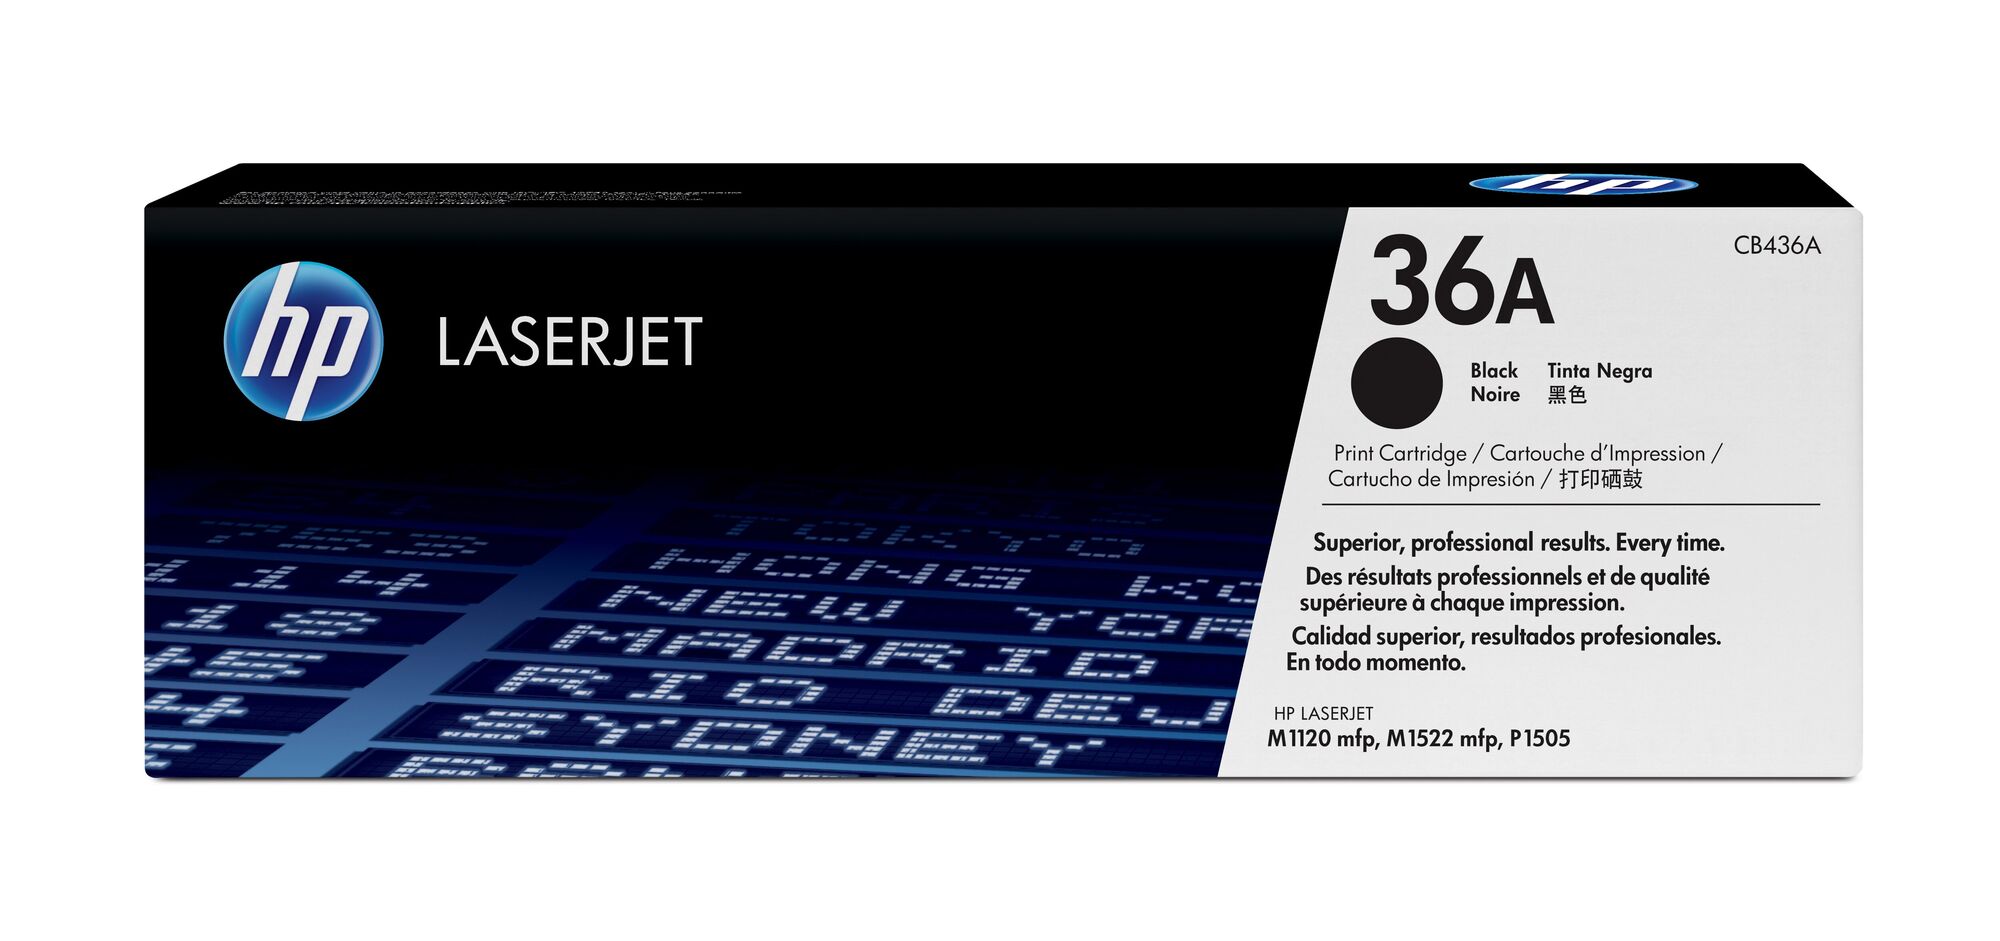 Картридж для печати HP Картридж HP 36A CB436A вид печати лазерный, цвет Черный, емкость